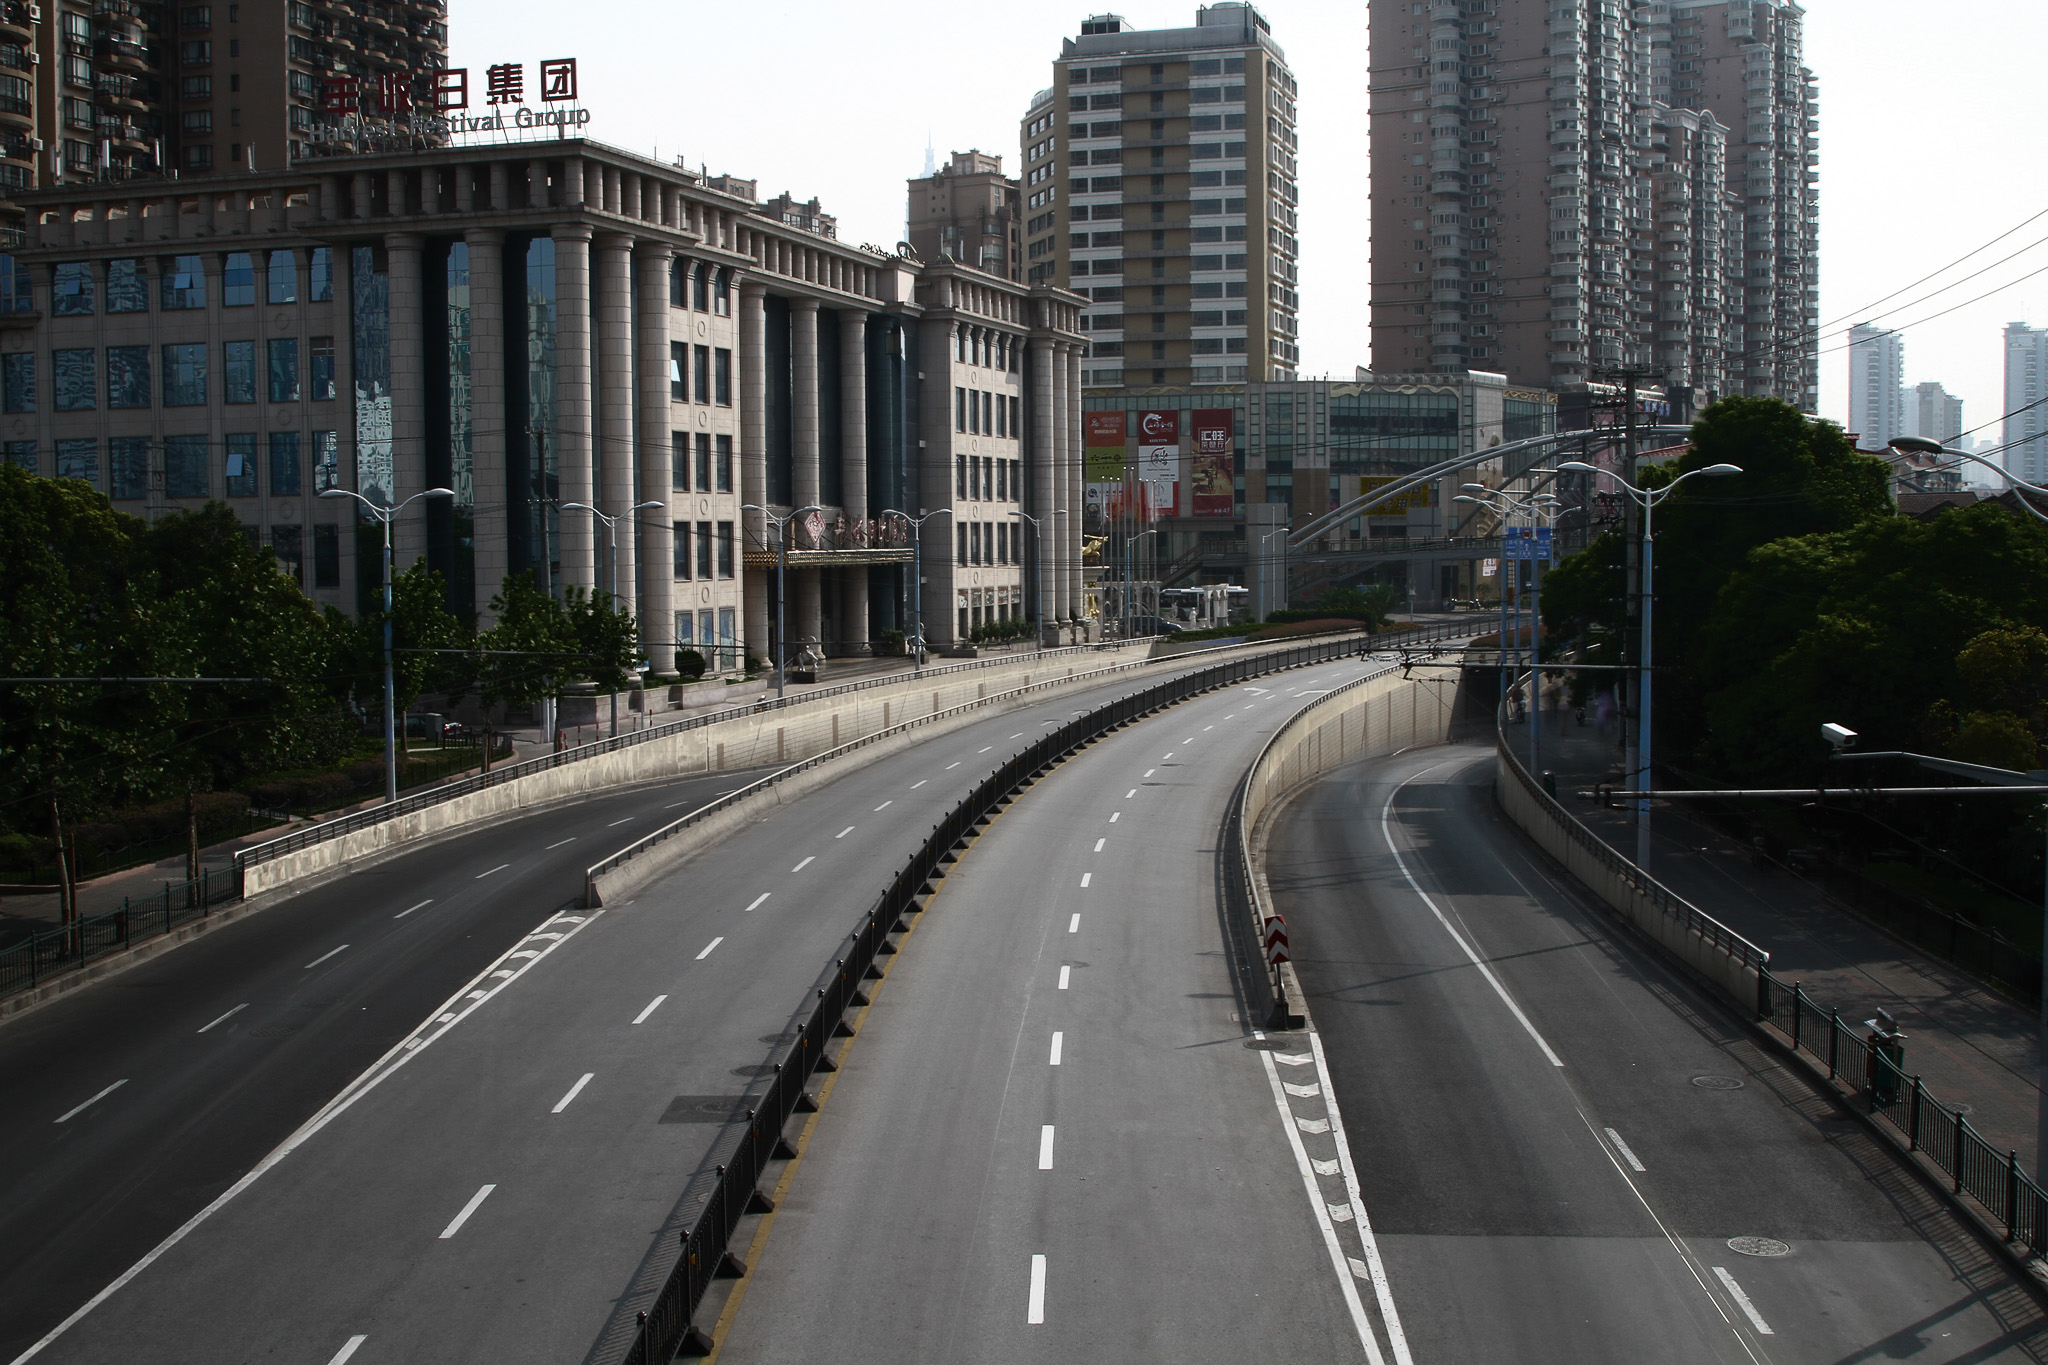 Empty Shanghai for SIgnatures